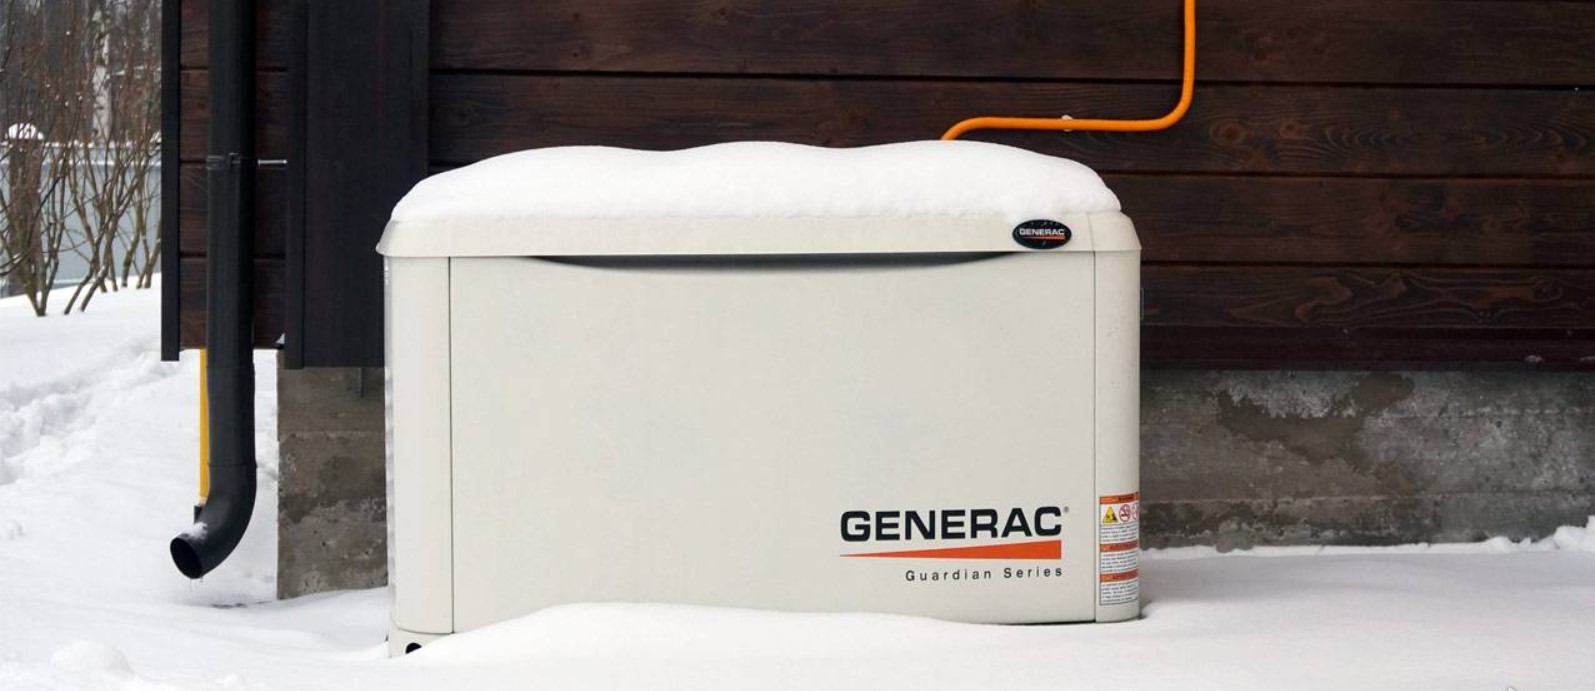 Газовые генераторы Generac -  